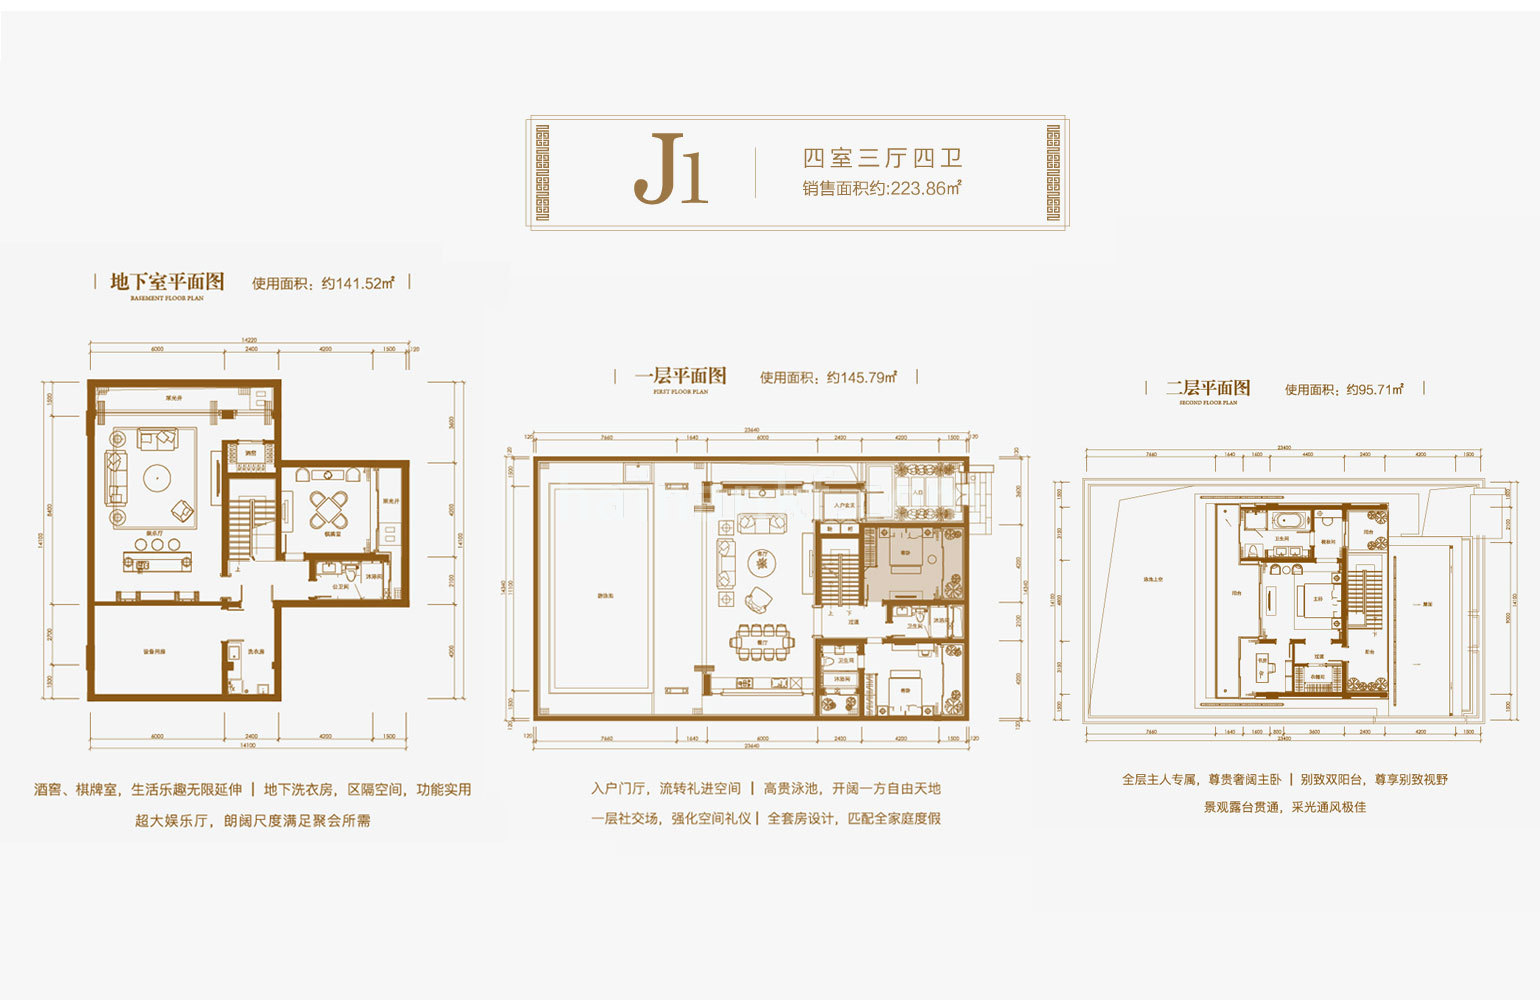 独栋 J1户型 4室3厅4卫 建筑面积223.86㎡